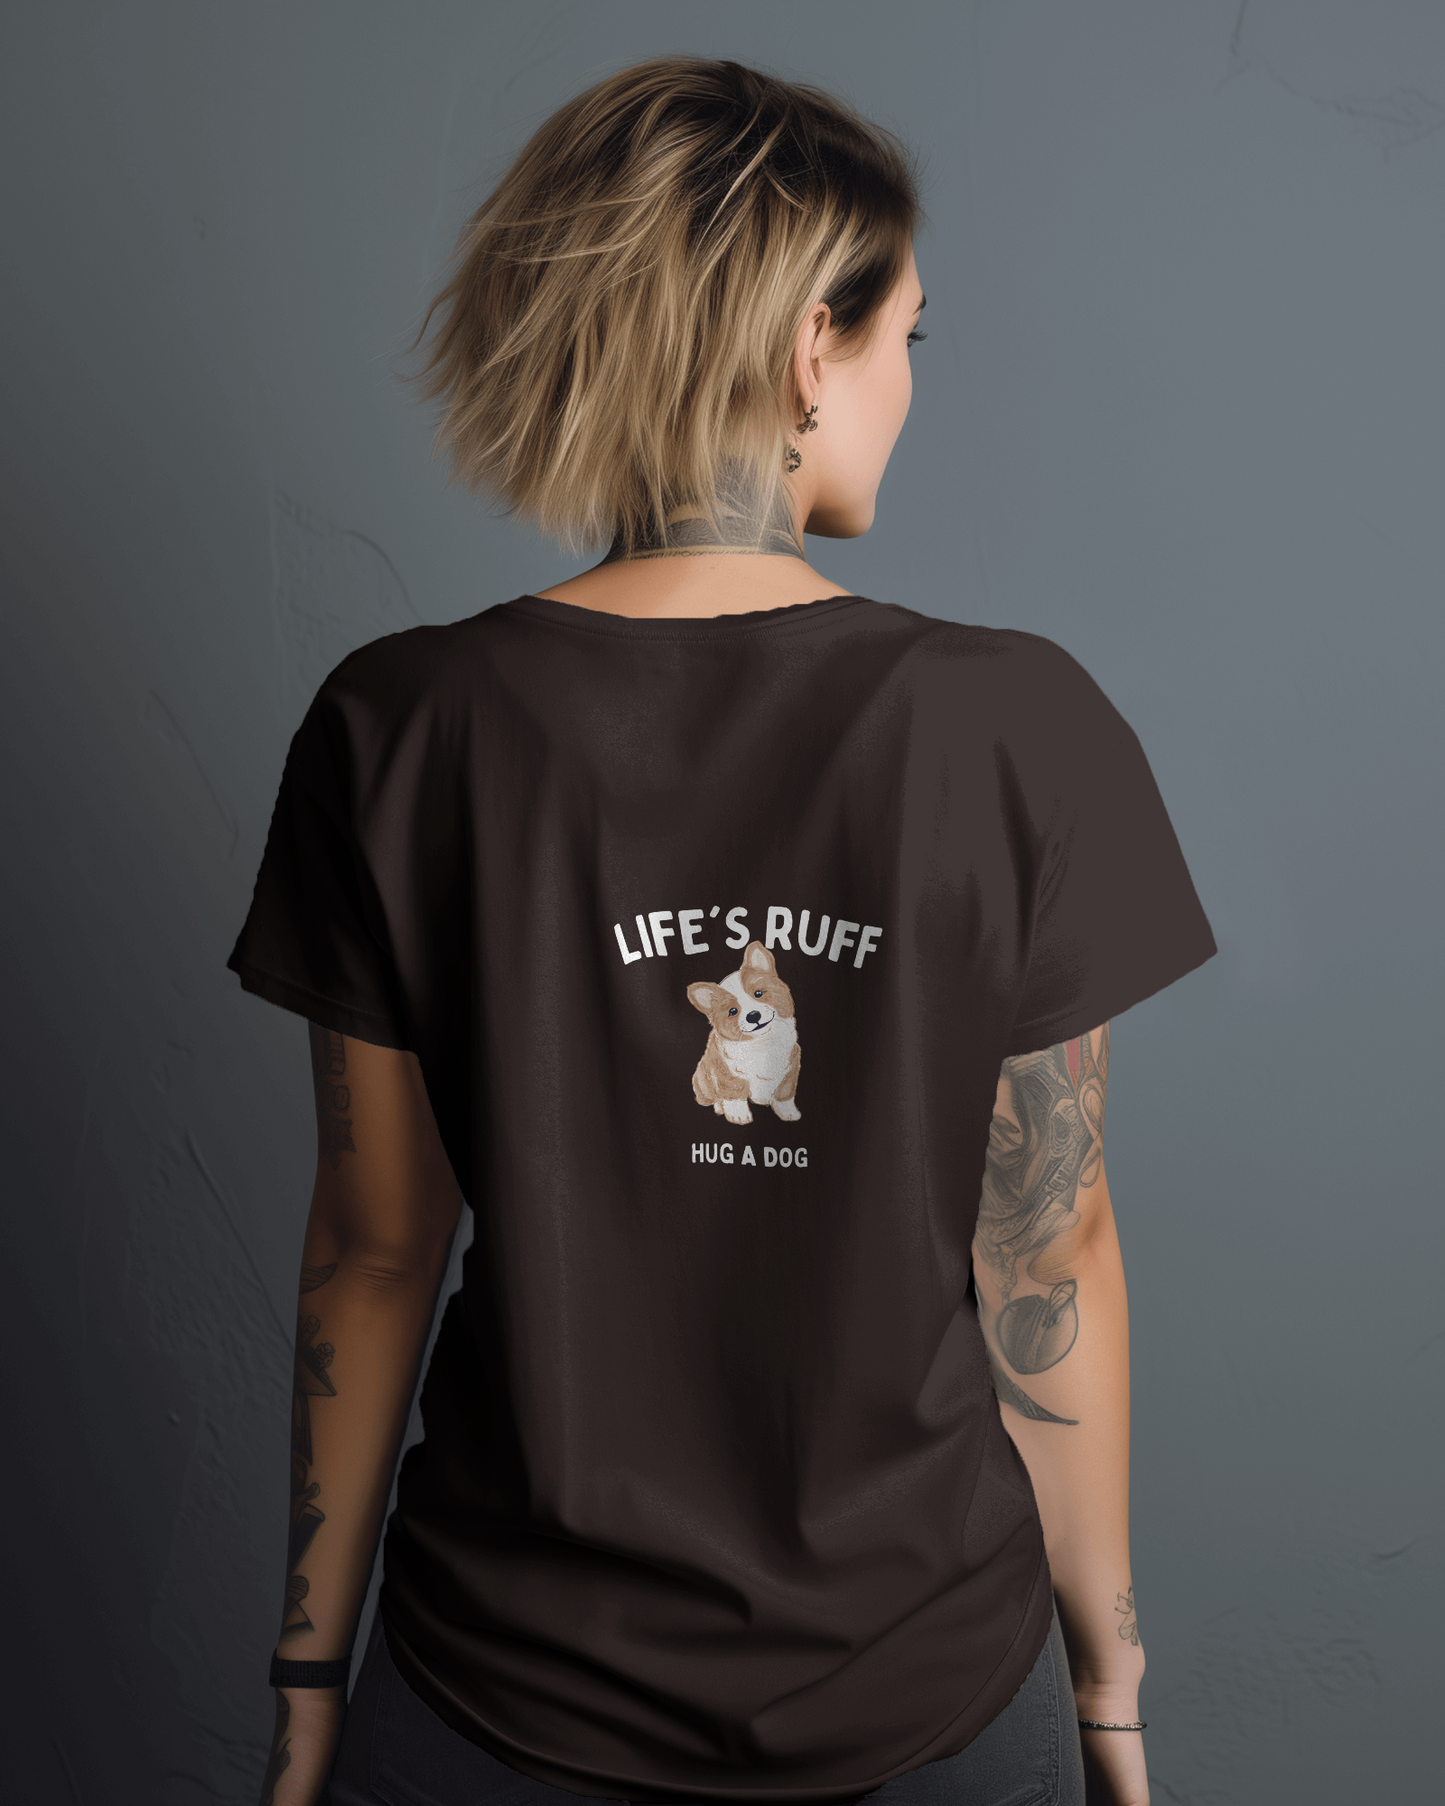 lifes rough- hug a dog slogan tshirt- white print